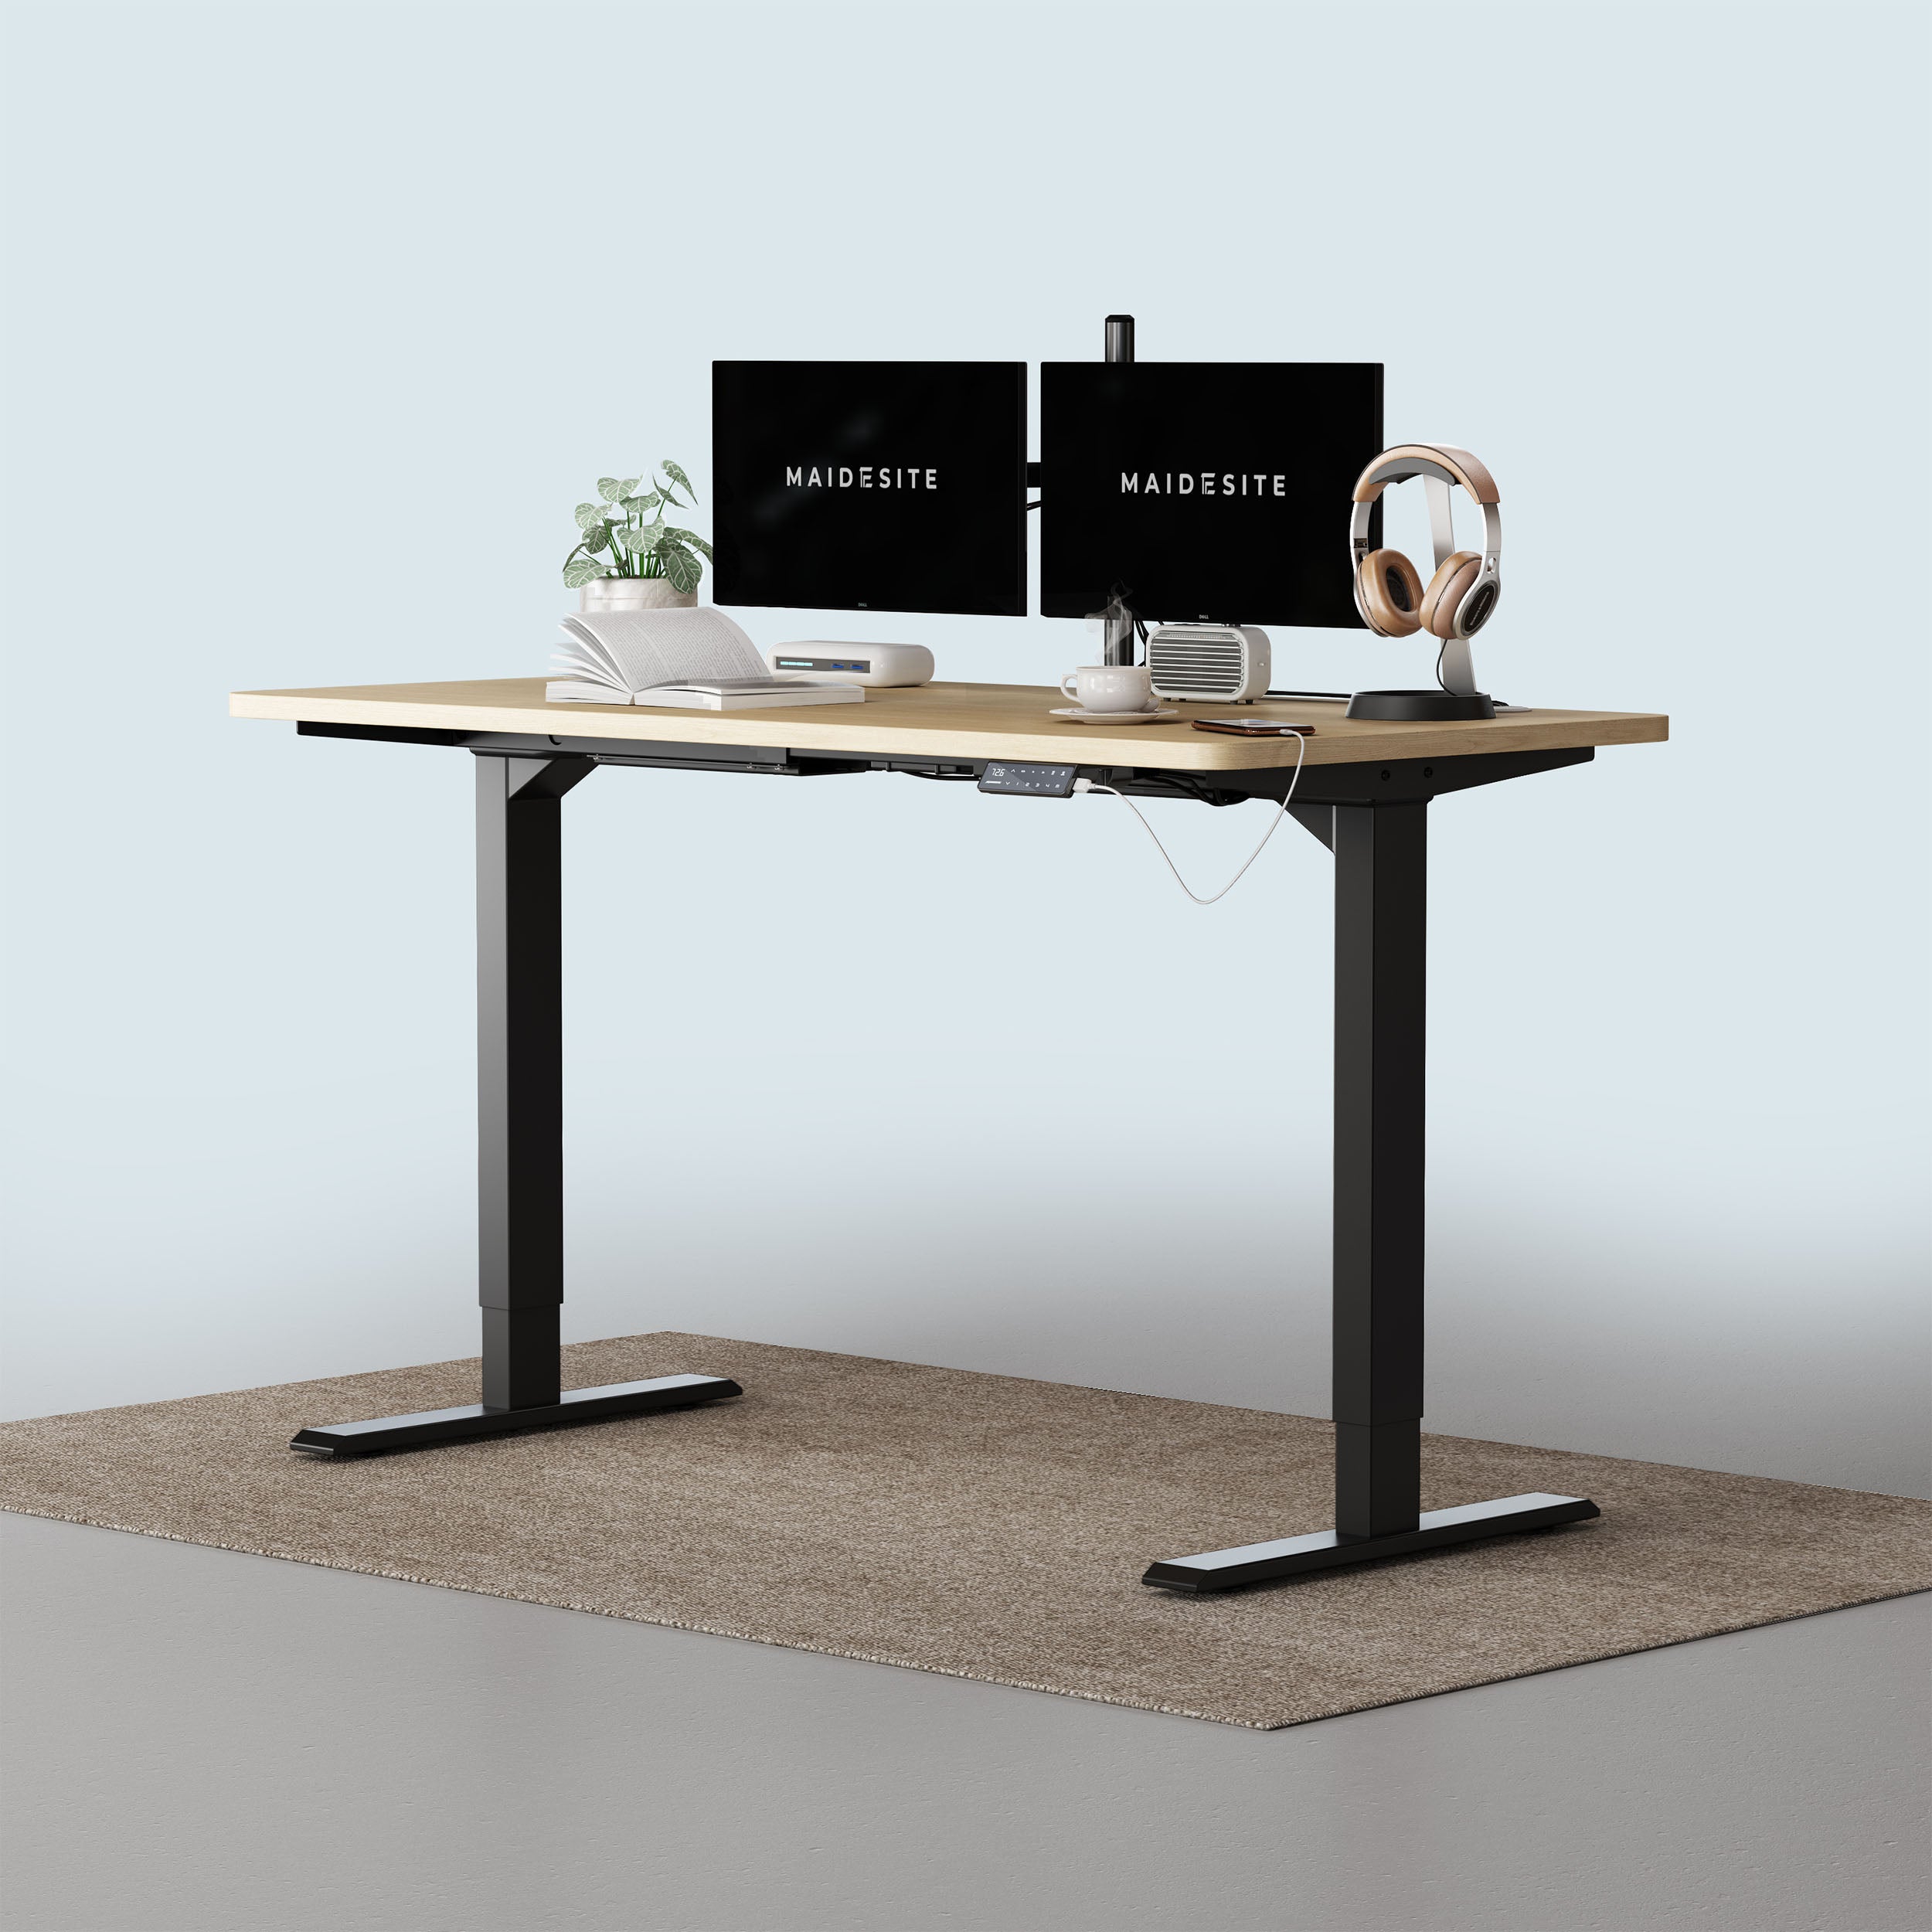 Maidesite T2 Pro height adjustable desk black frame and oak wood desktop